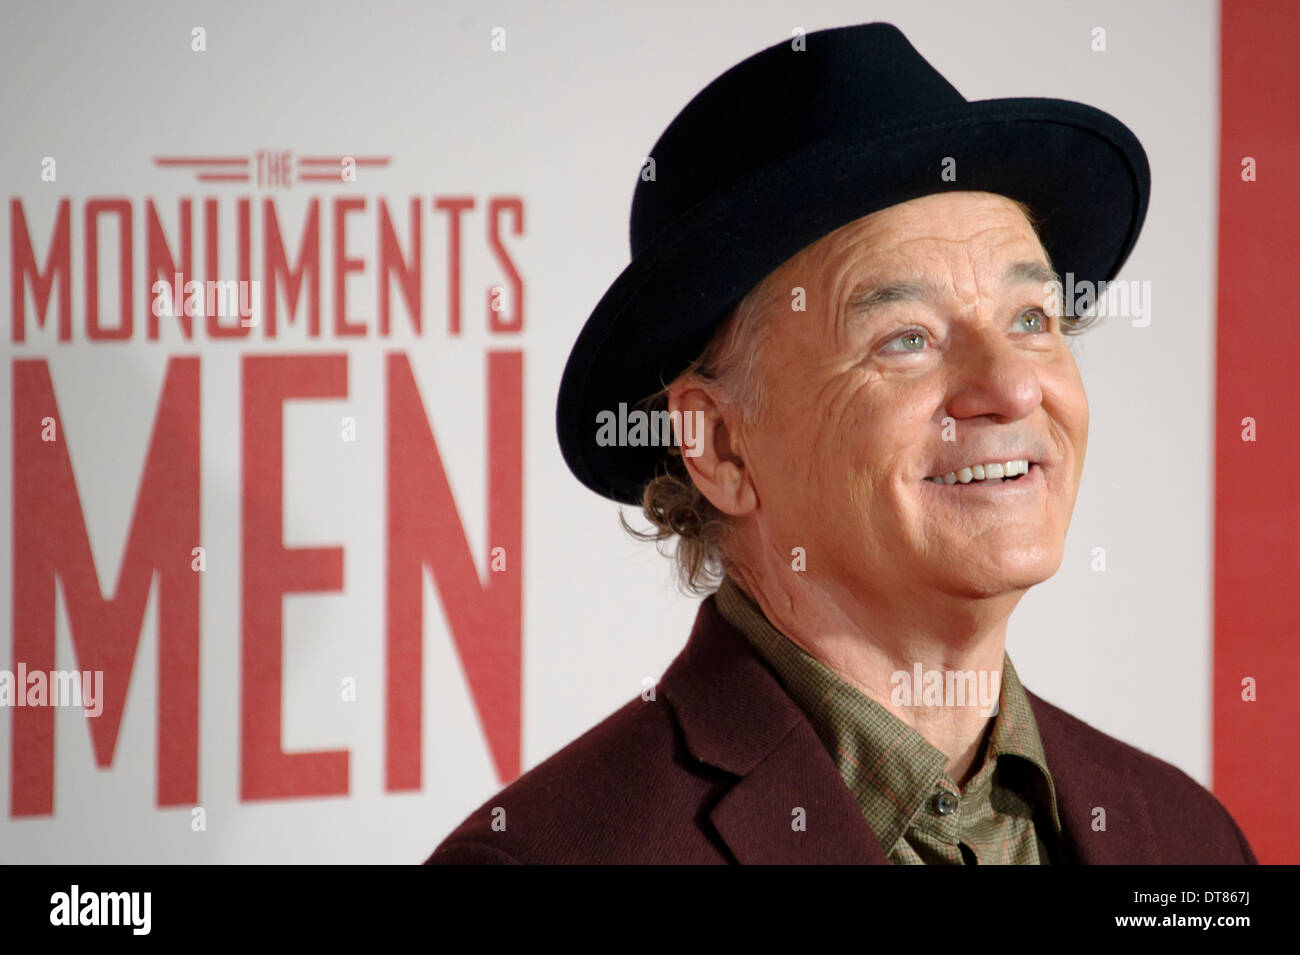 Bill Murray kommt für die UK-Premiere von "The Monuments Men" zu einem zentralen London Kino, London. Stockfoto